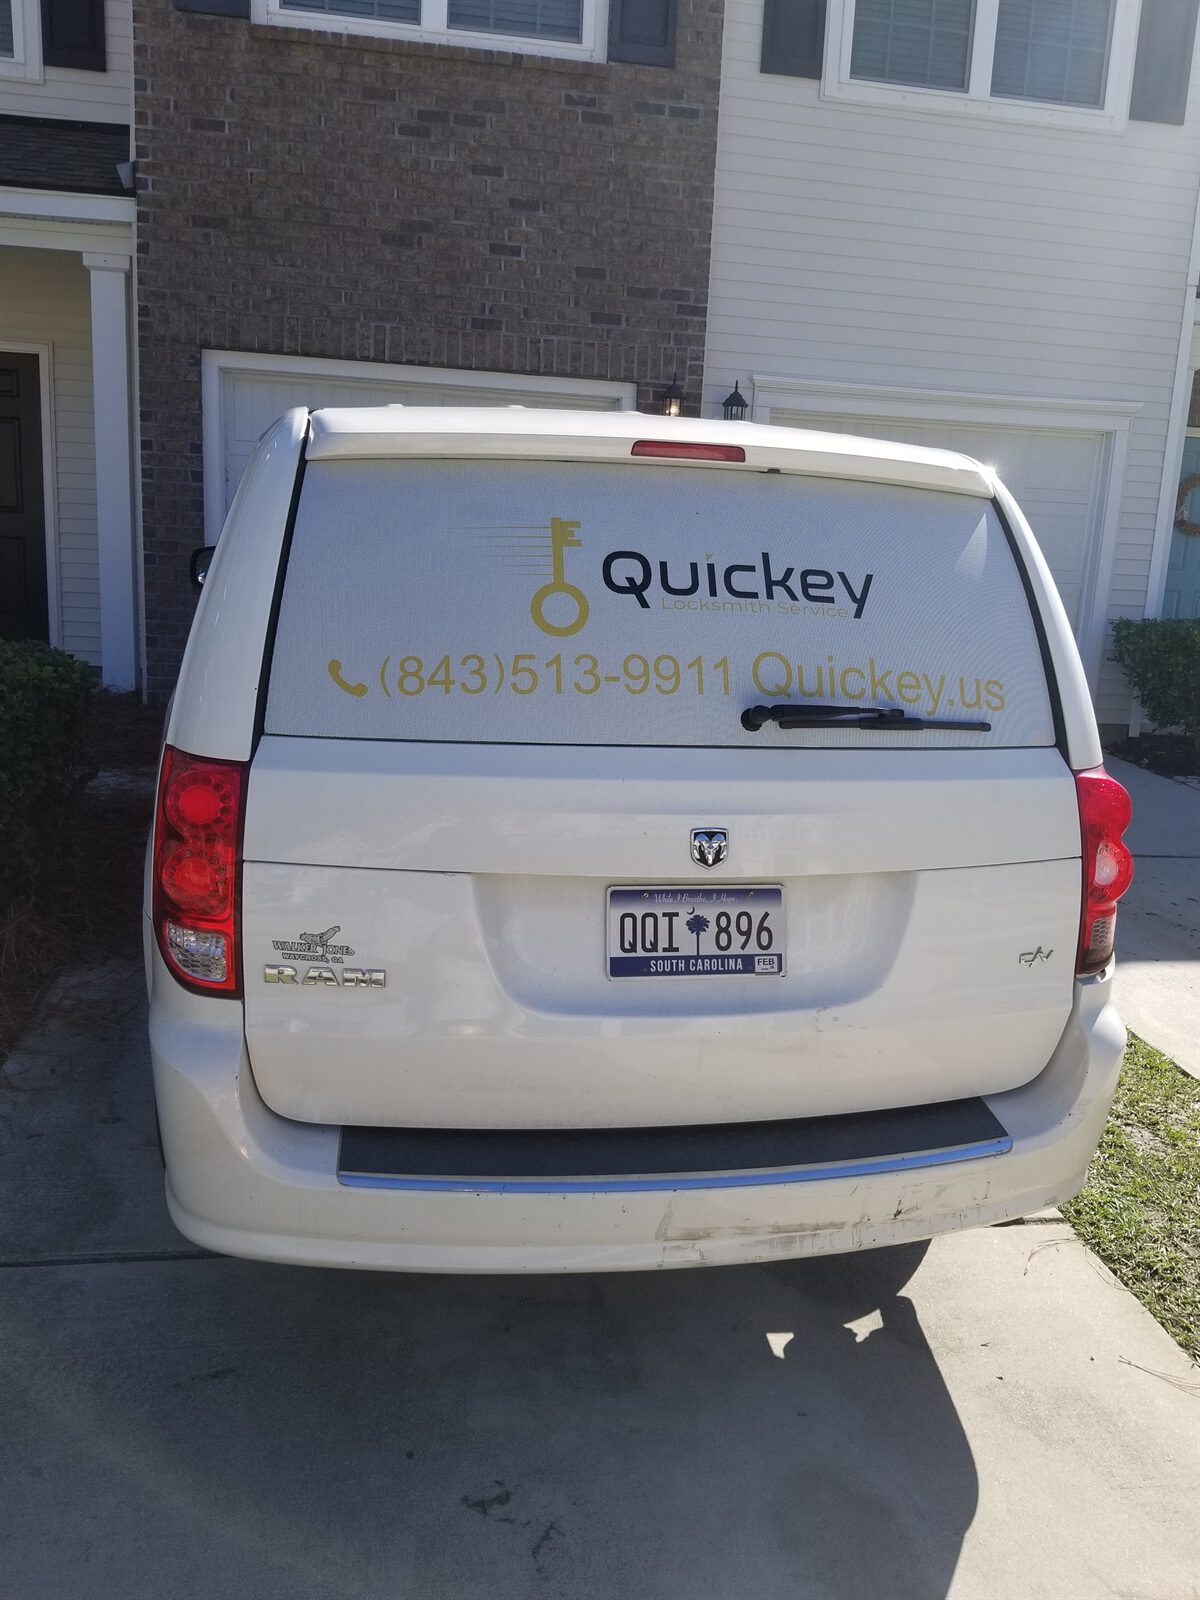 Quickey Mobile Locksmith Van